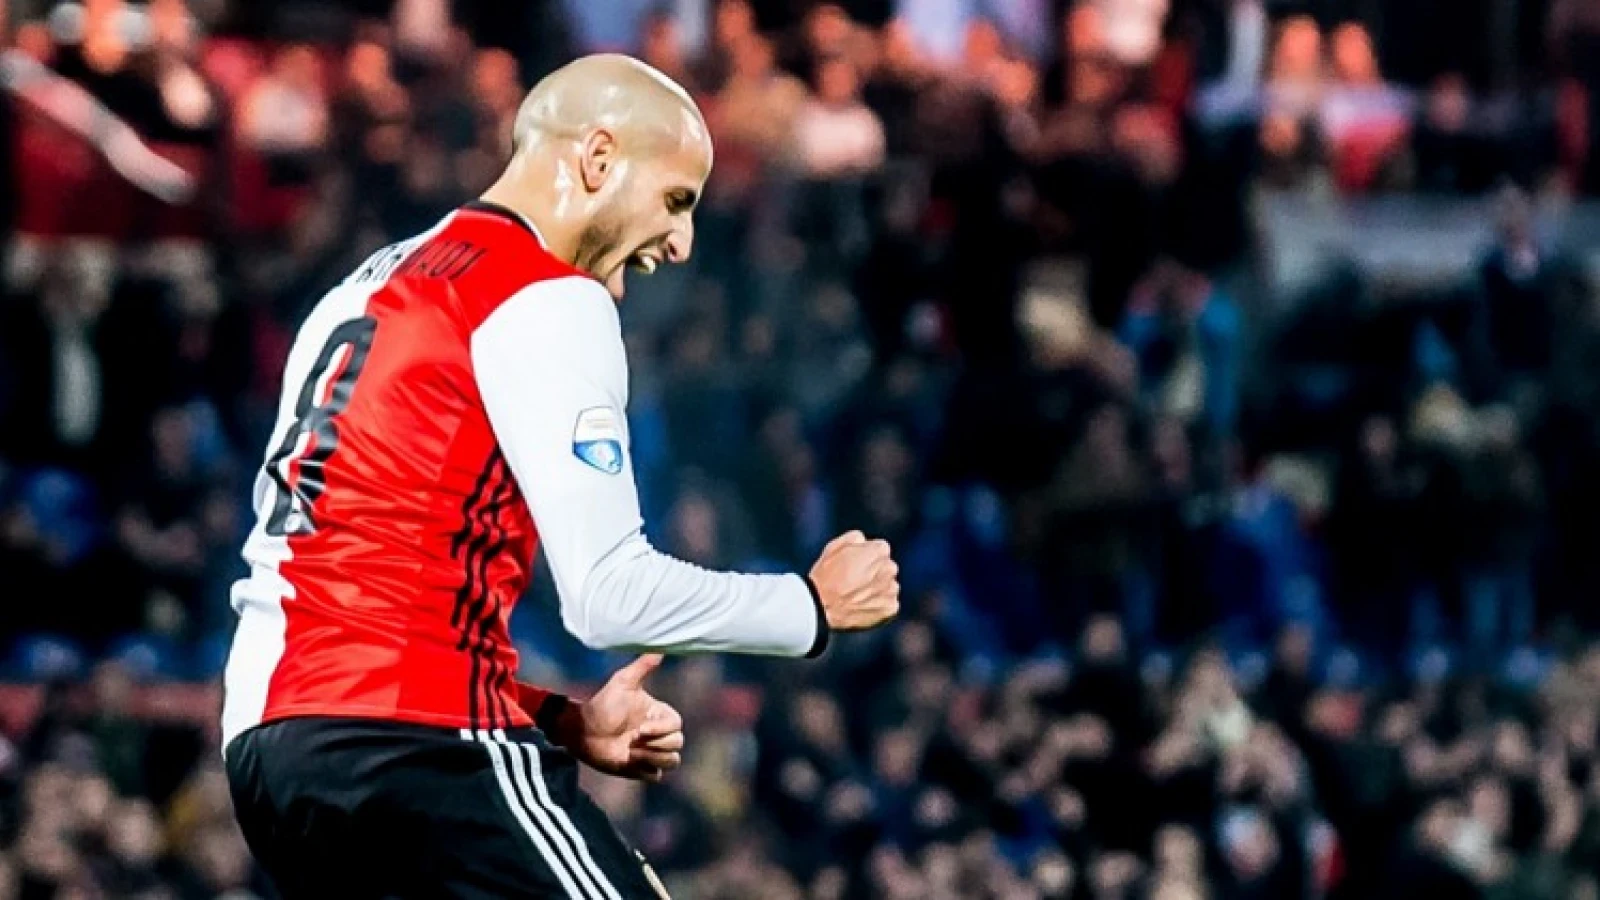 El Ahmadi doet uitspraak over zijn toekomst bij Feyenoord in openhartig interview